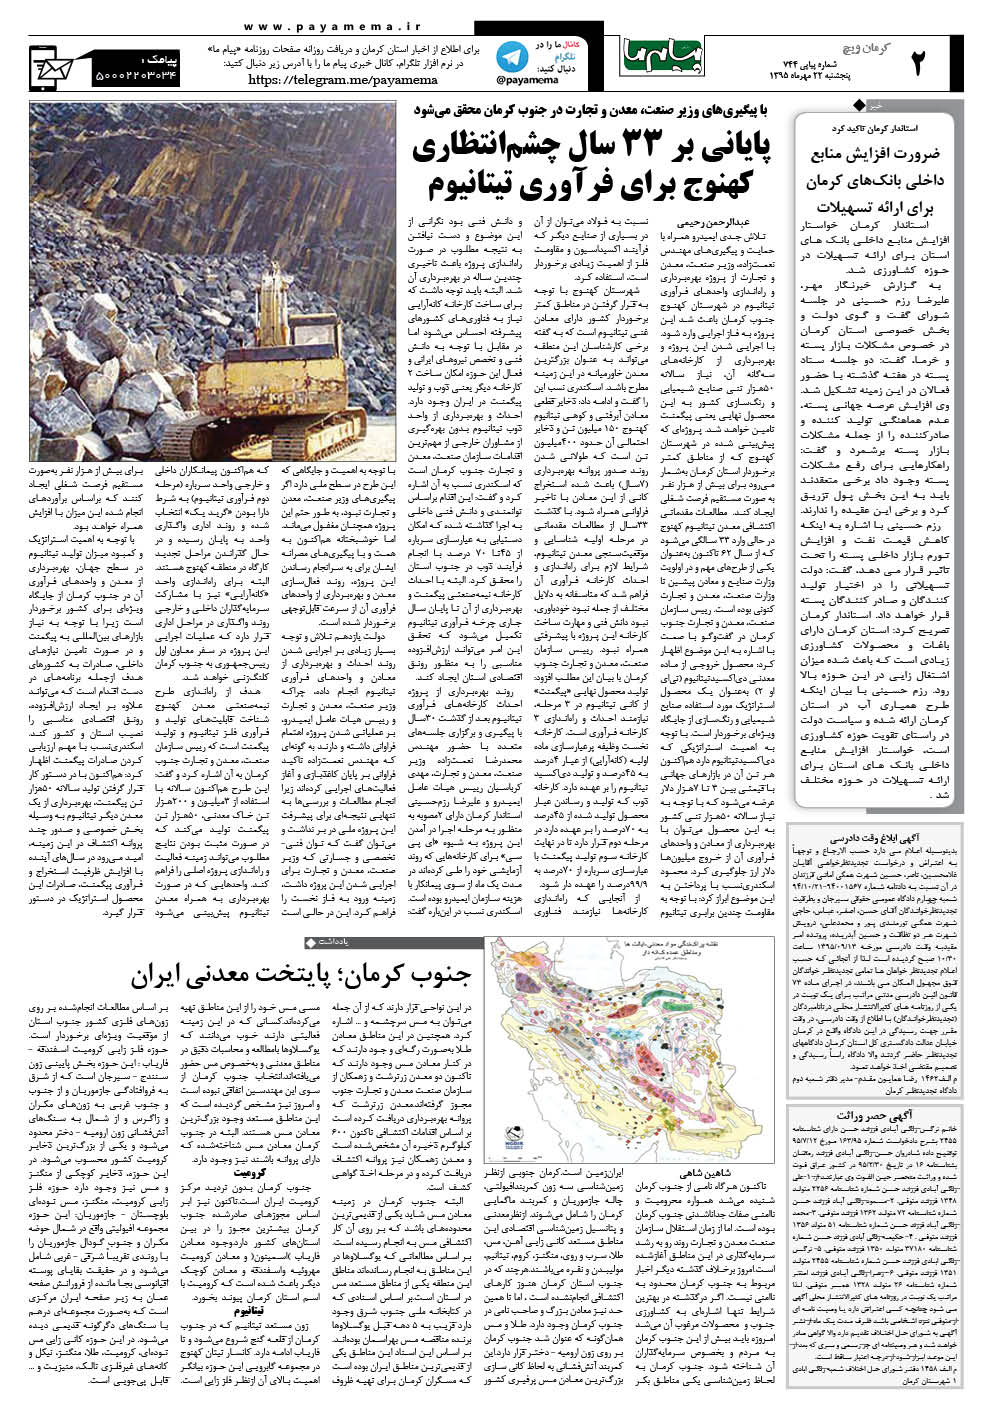 صفحه کرمان ویج شماره 744 روزنامه پیام ما